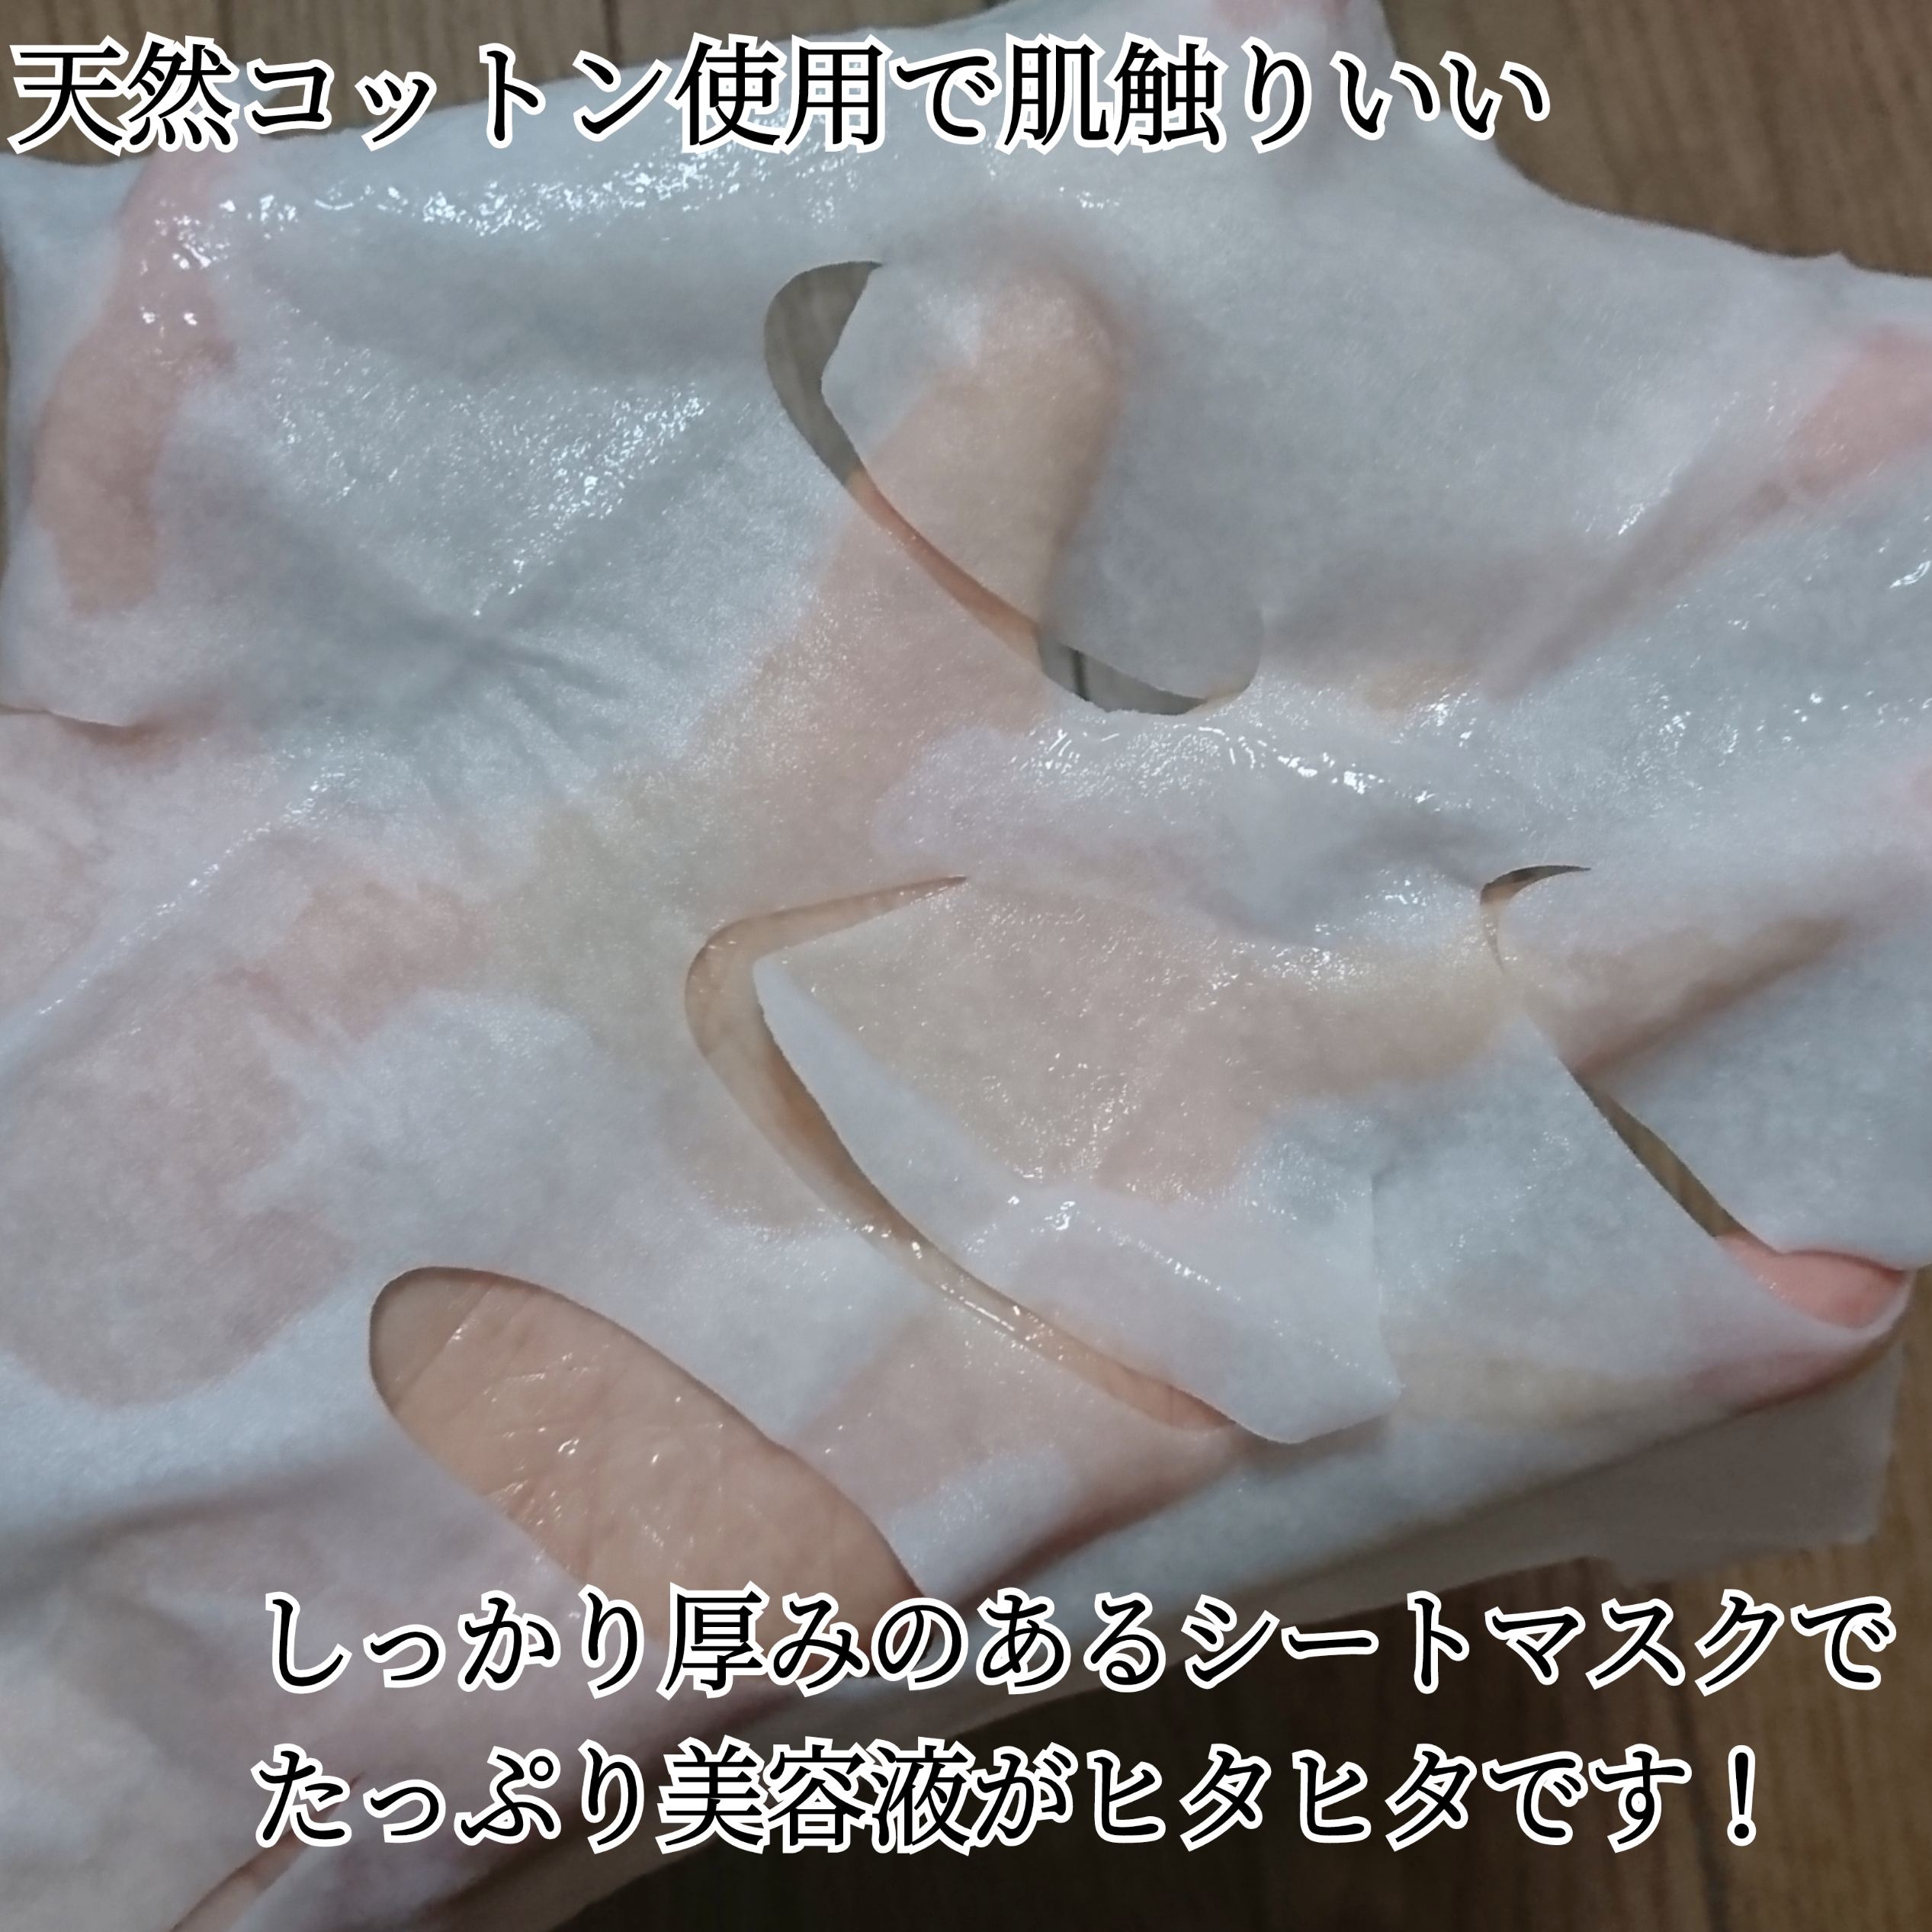 ETVOS 薬用ホワイトニングコンセントシートマスクを使ったYuKaRi♡さんのクチコミ画像4